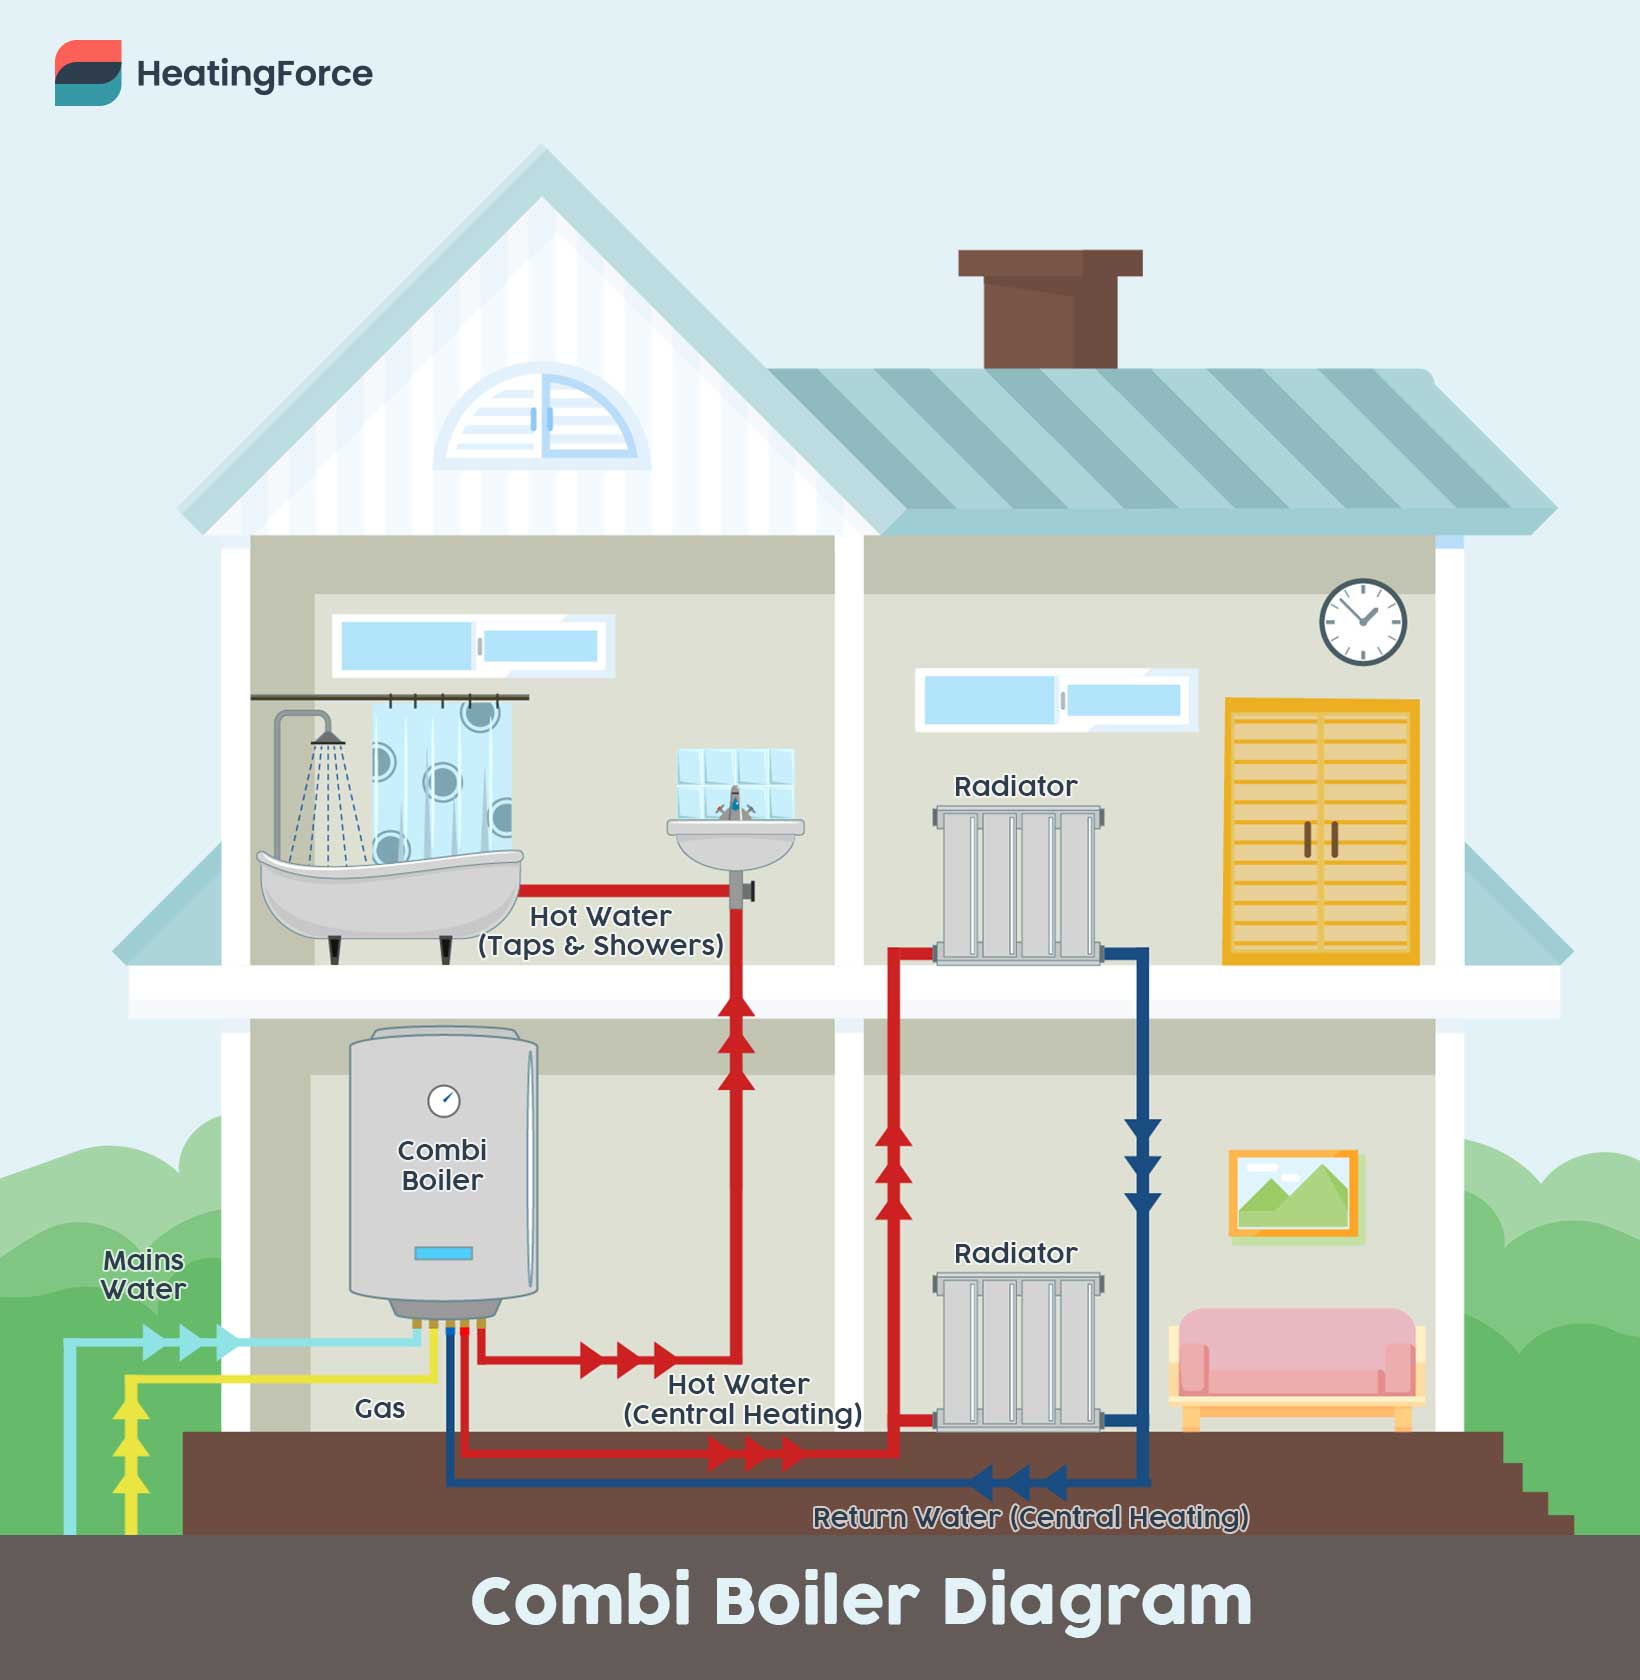 Combi boiler diagram